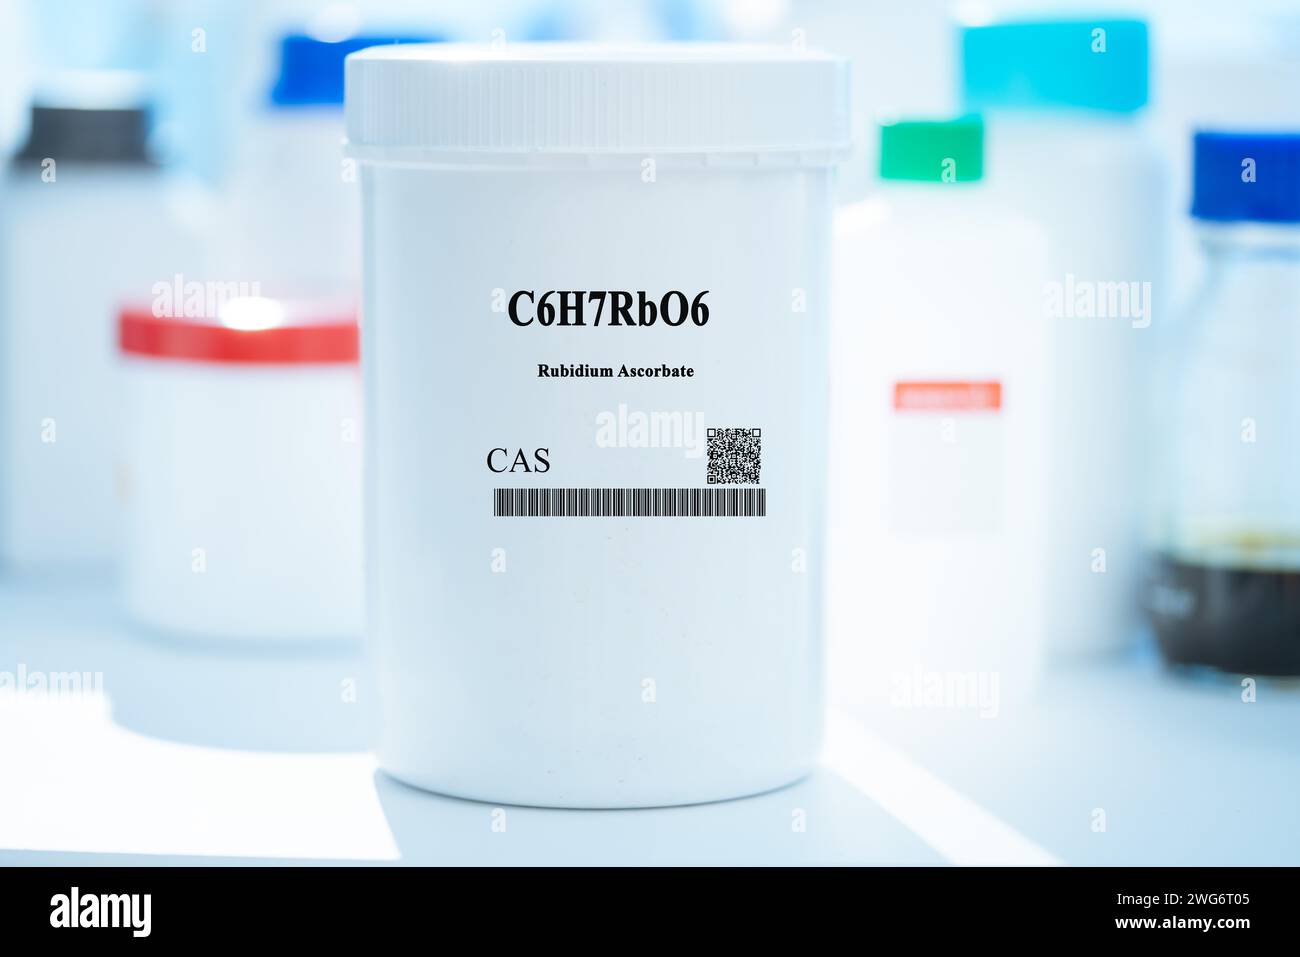 C6H7RbO6 rubidium ascorbate CAS sustancia química en envases de laboratorio de plástico blanco Foto de stock